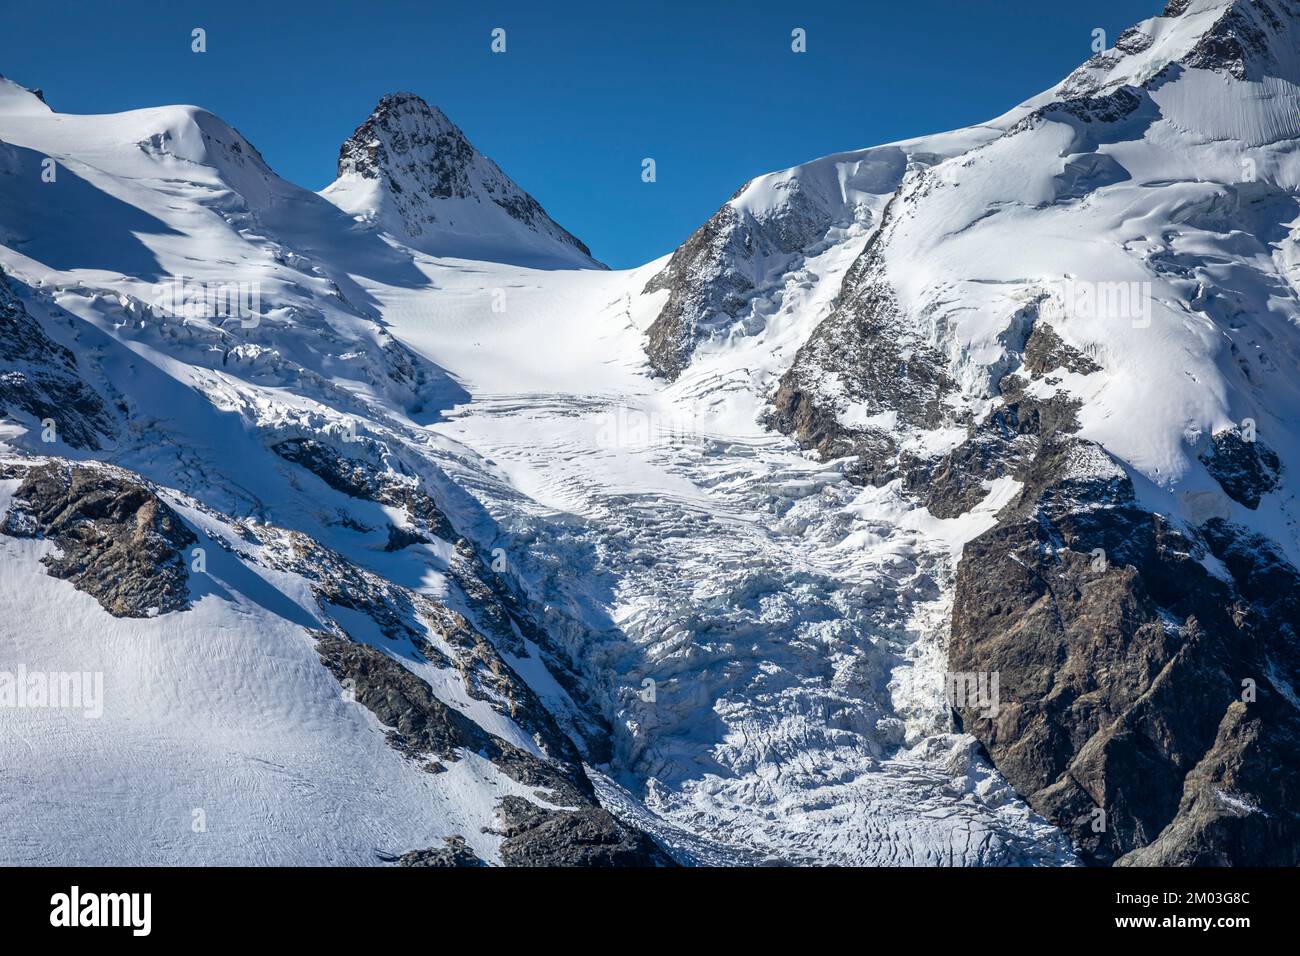 La catena montuosa del Bernina e del Palu con ghiacciai nelle Alpi, in Engadina, in Svizzera Foto Stock